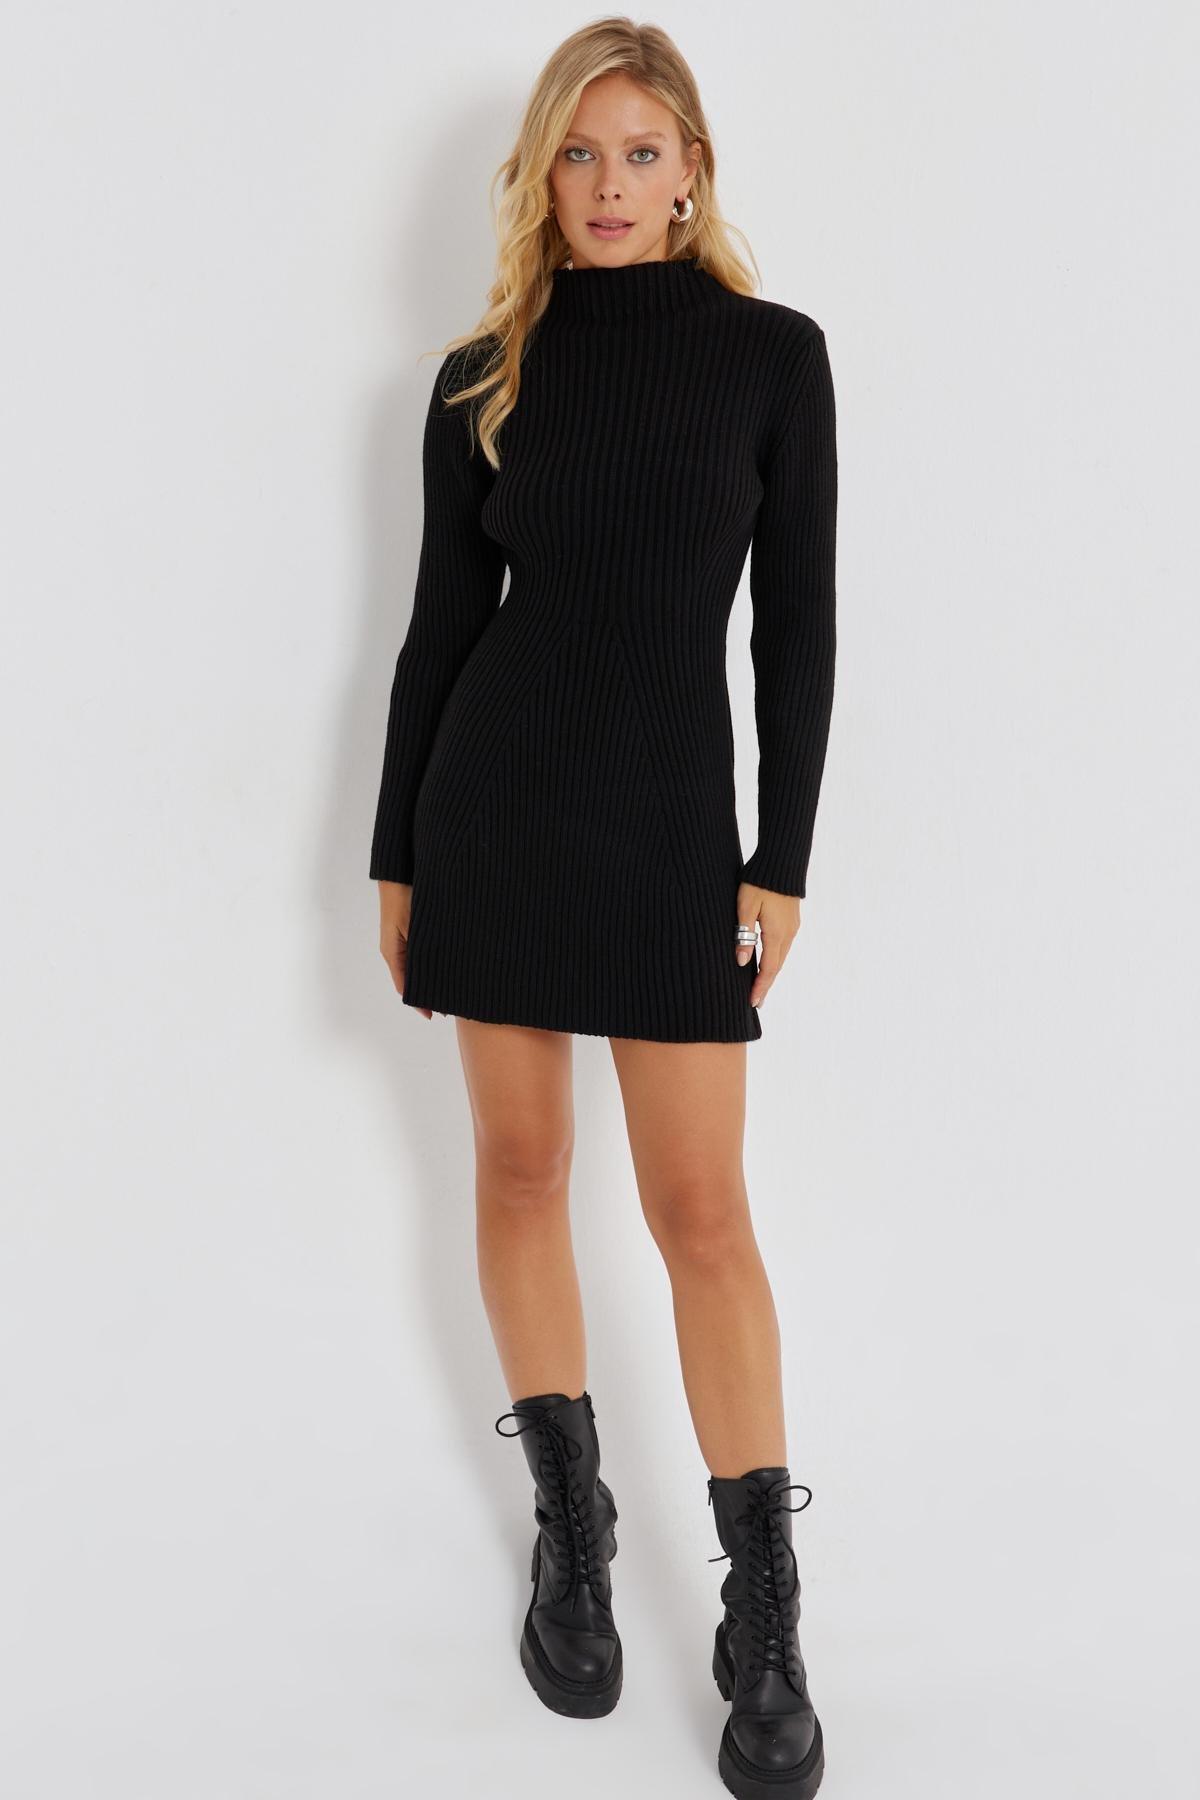 Cool & Sexy - Black Mini Knitwear Dress